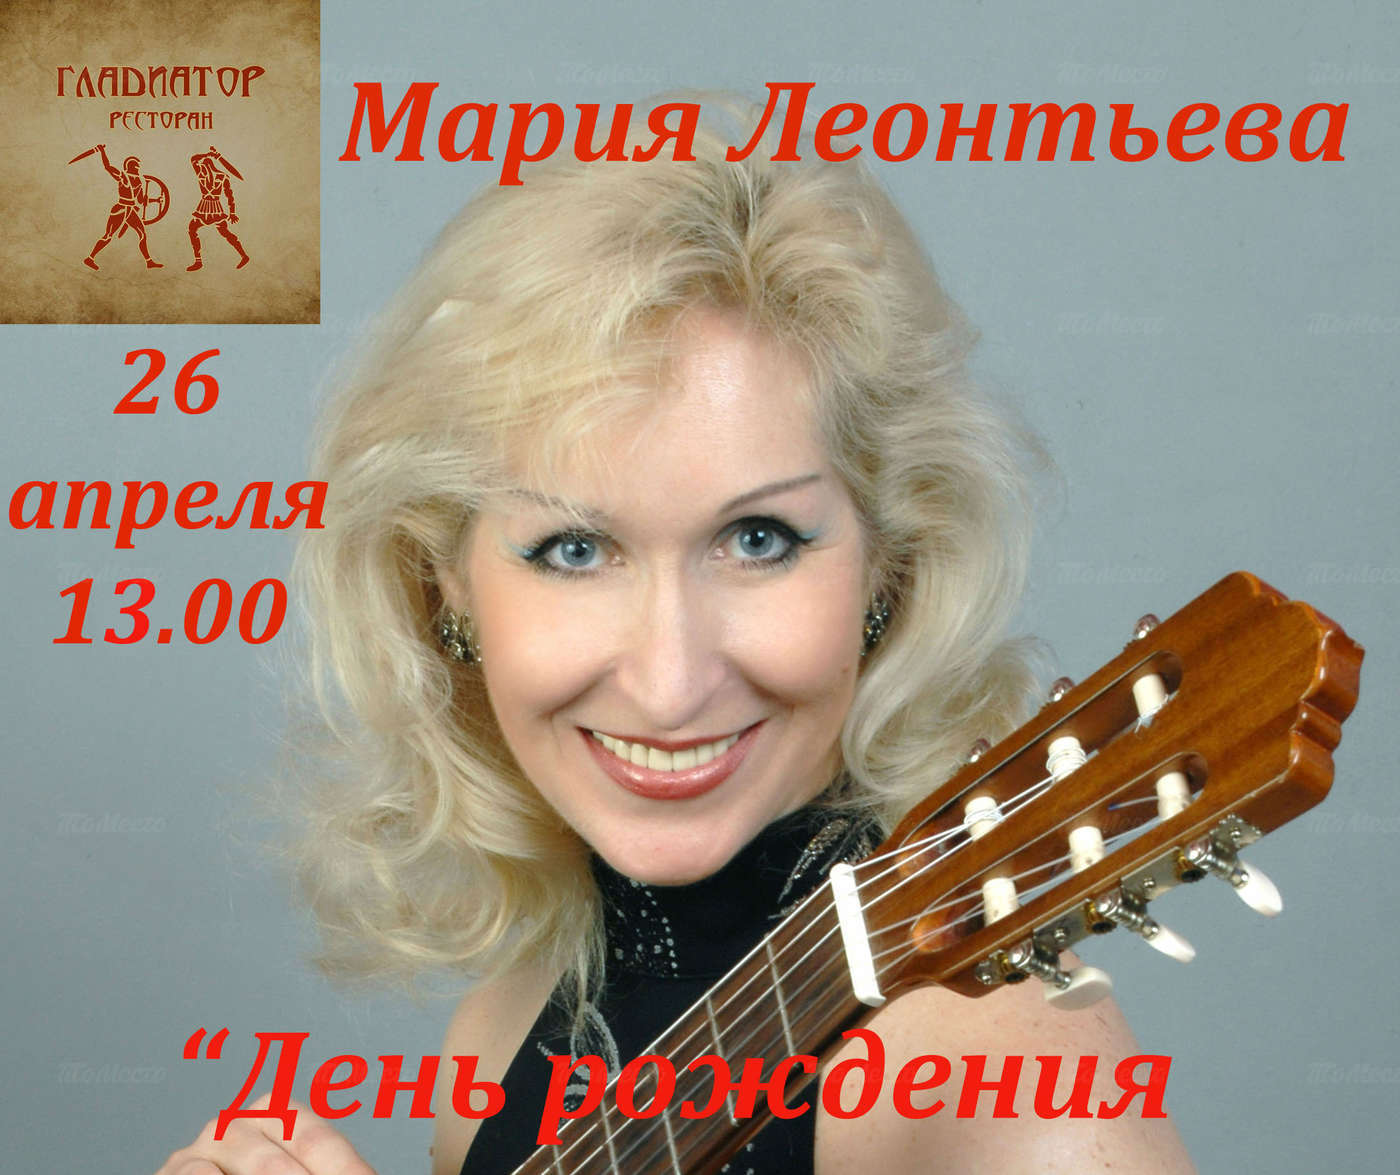 Концерт Марии Леонтьевой